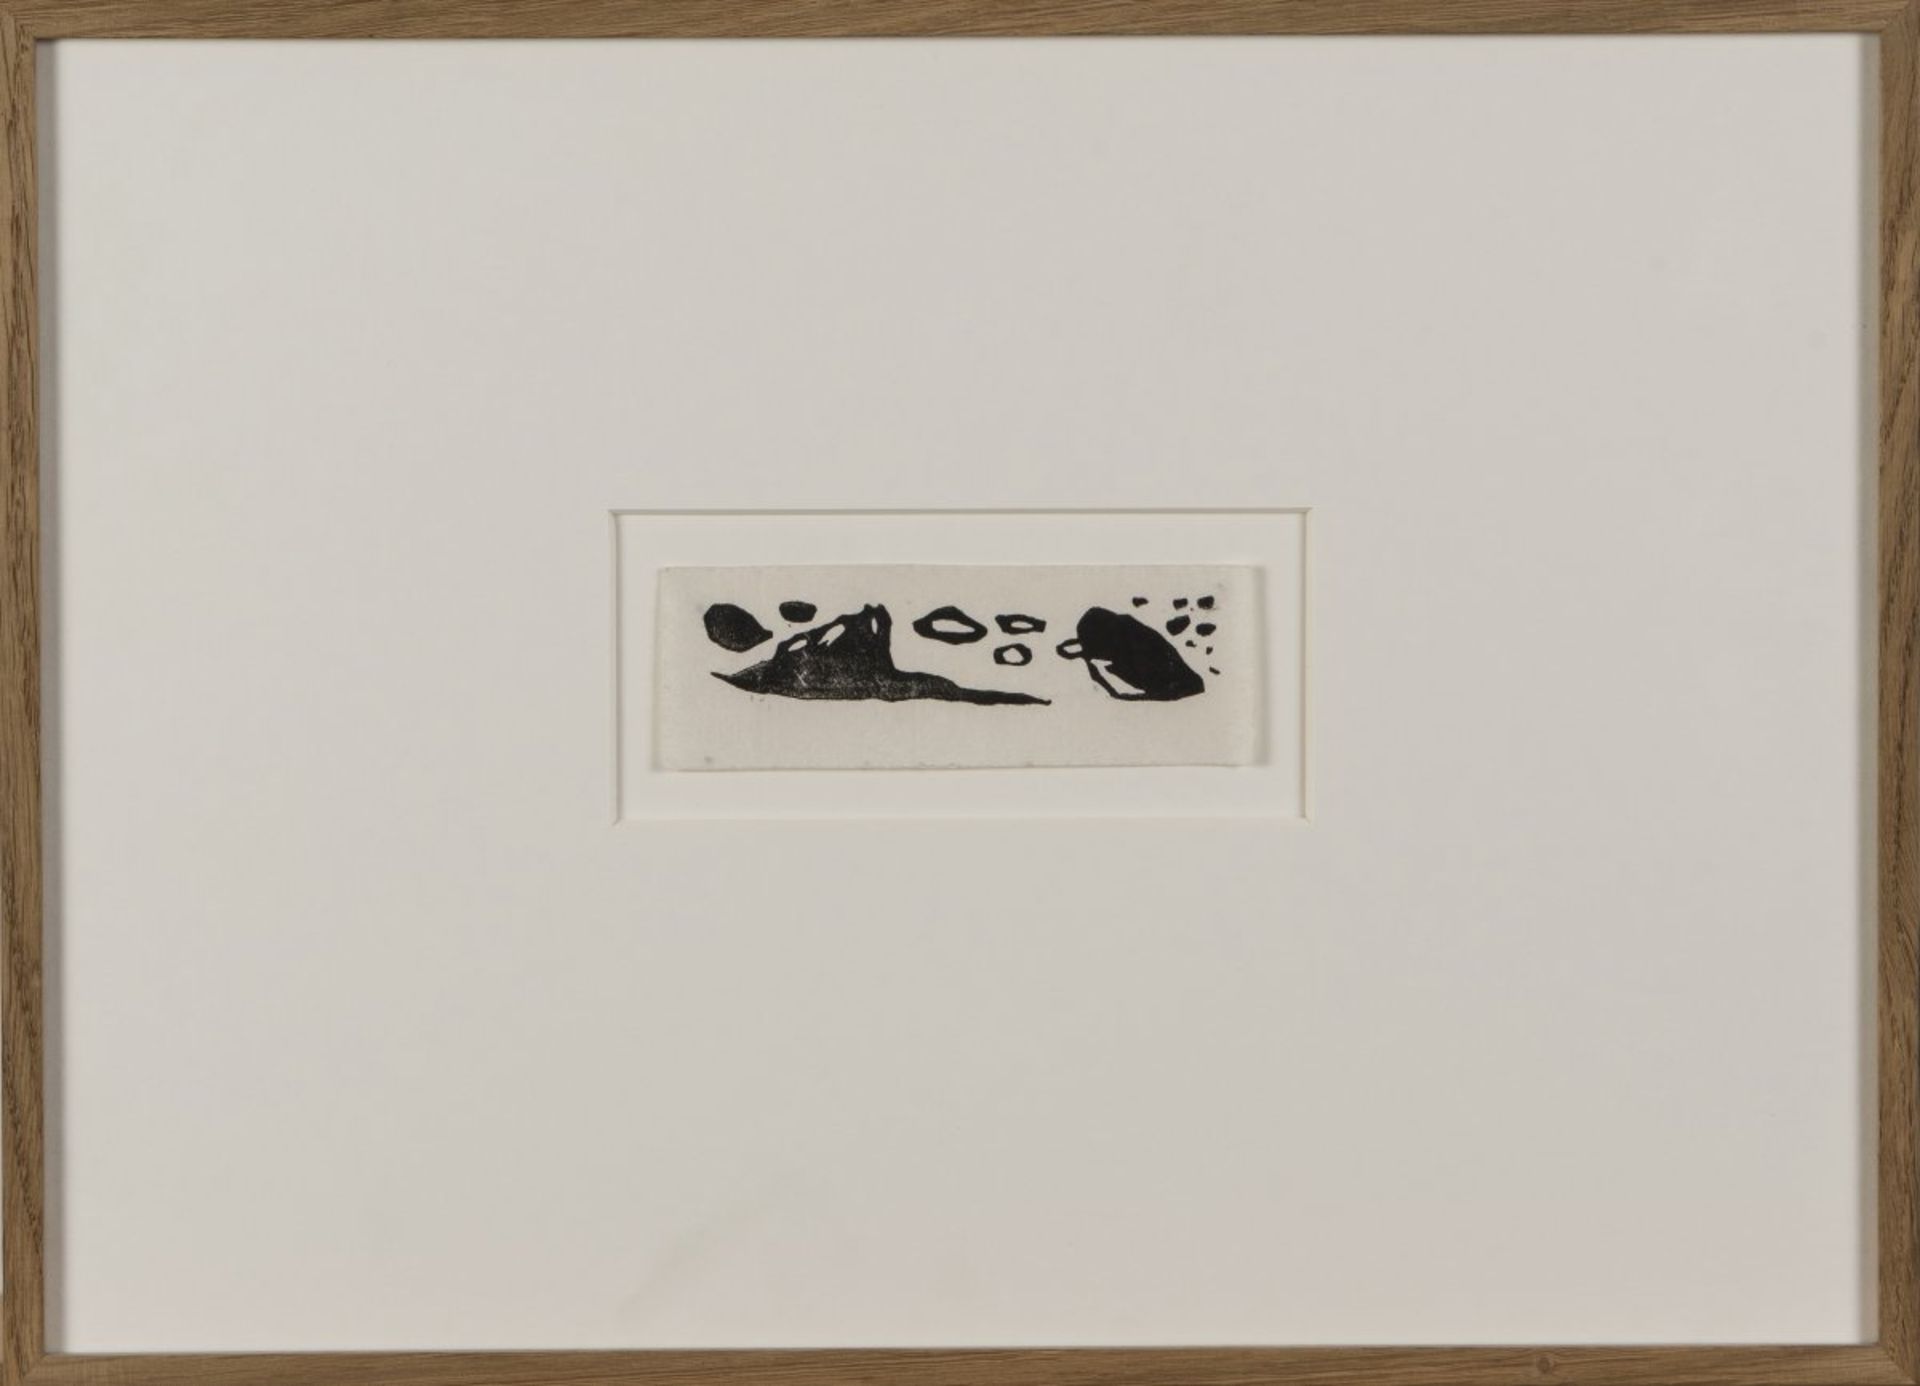 Wassily Kandinsky, 9 vignettes from 'Über das Geistige in der Kunst' and 'Klänge', all 1911 - Bild 5 aus 9